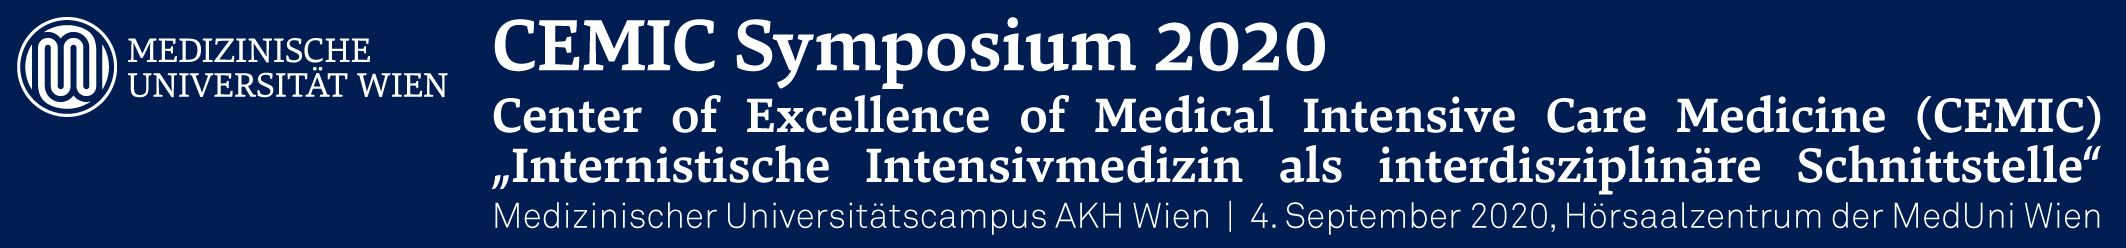 CEMIC Symposium 2020